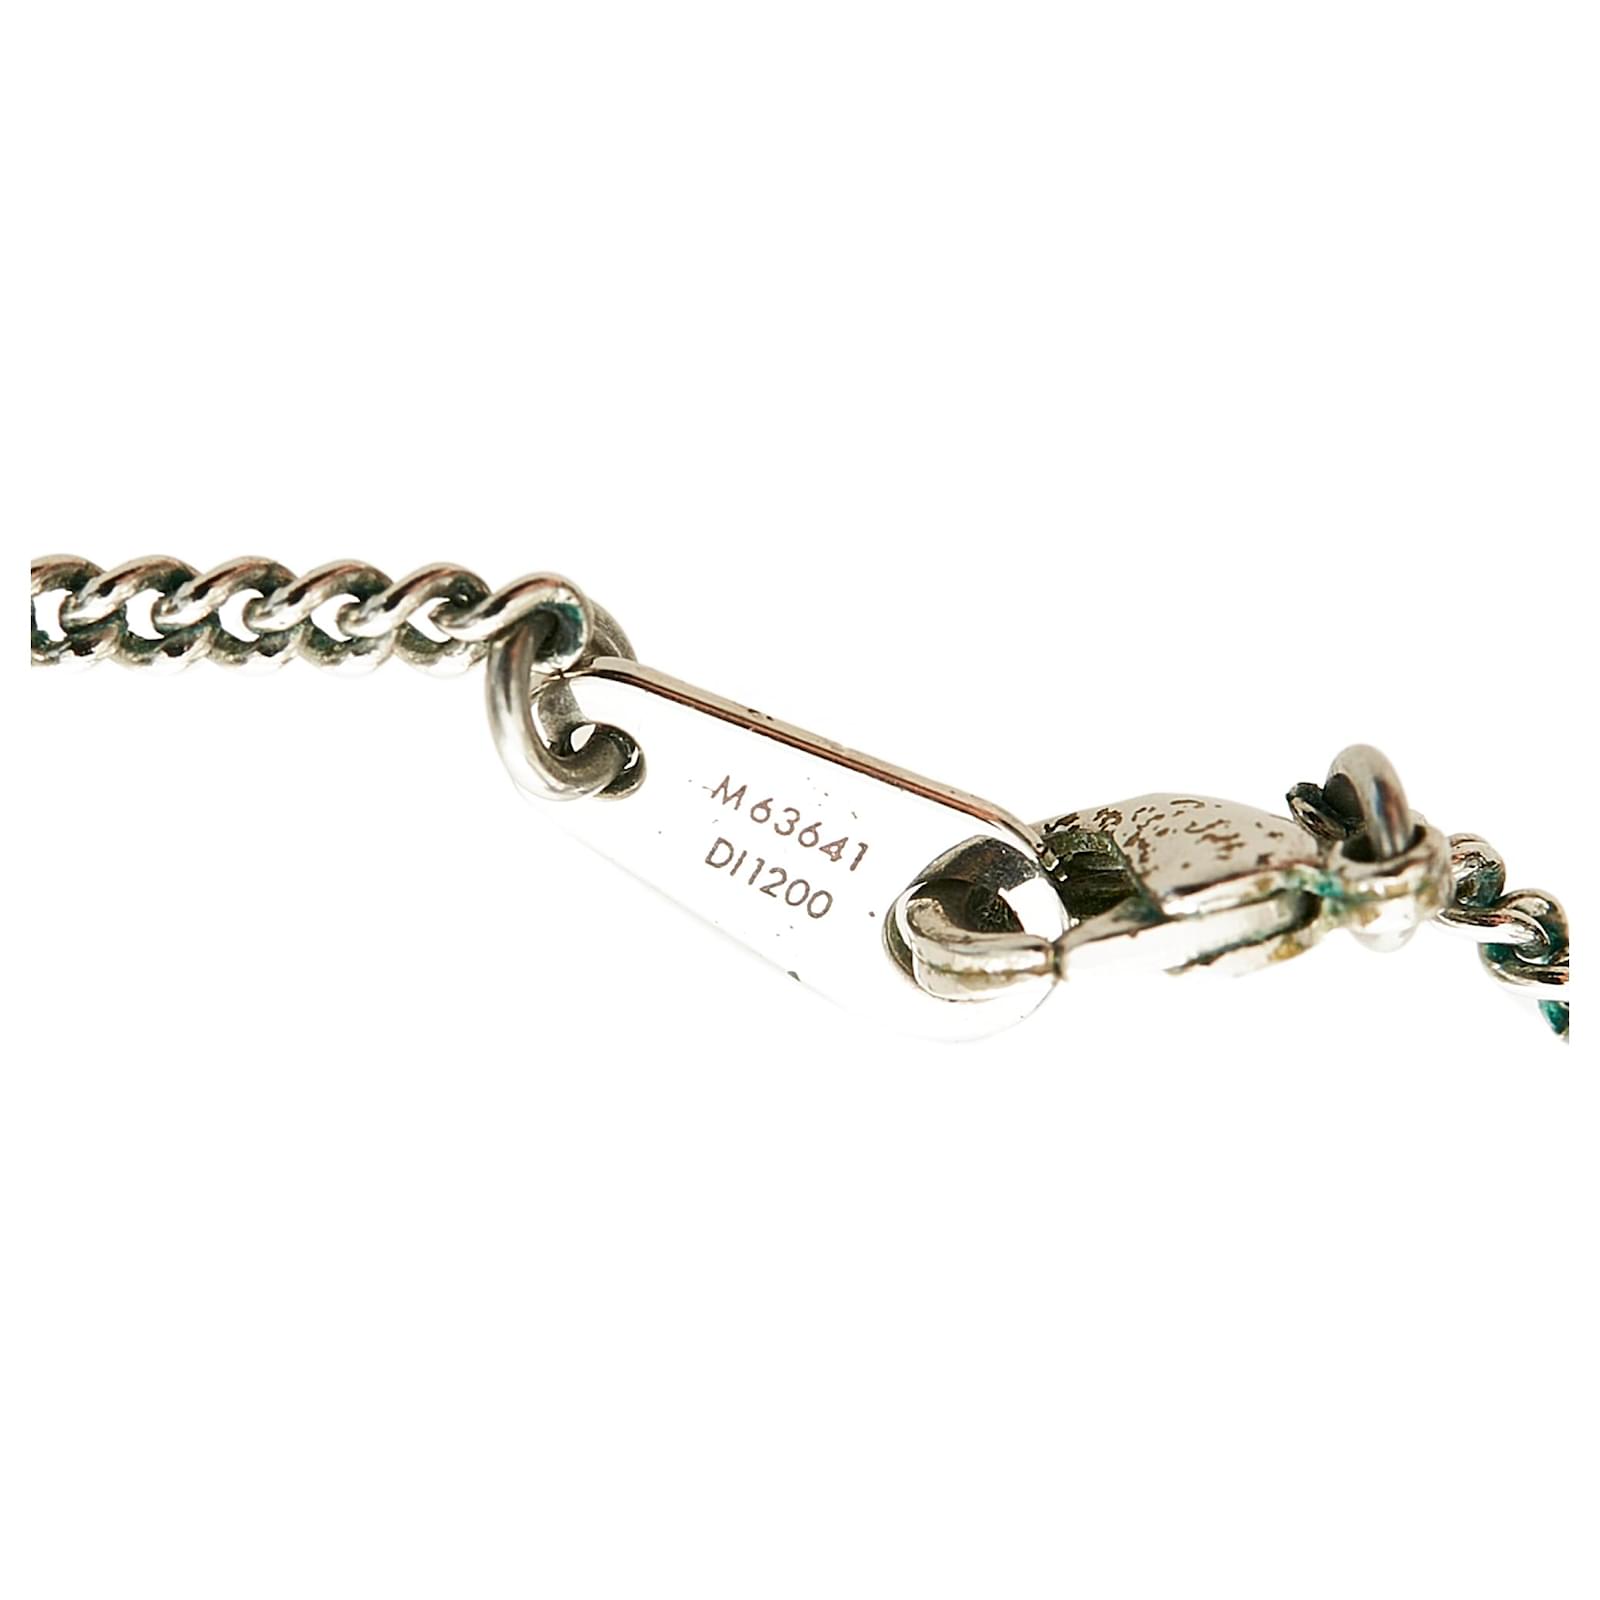 Louis Vuitton Monogram Eclipse Collier Charm Necklace M63641